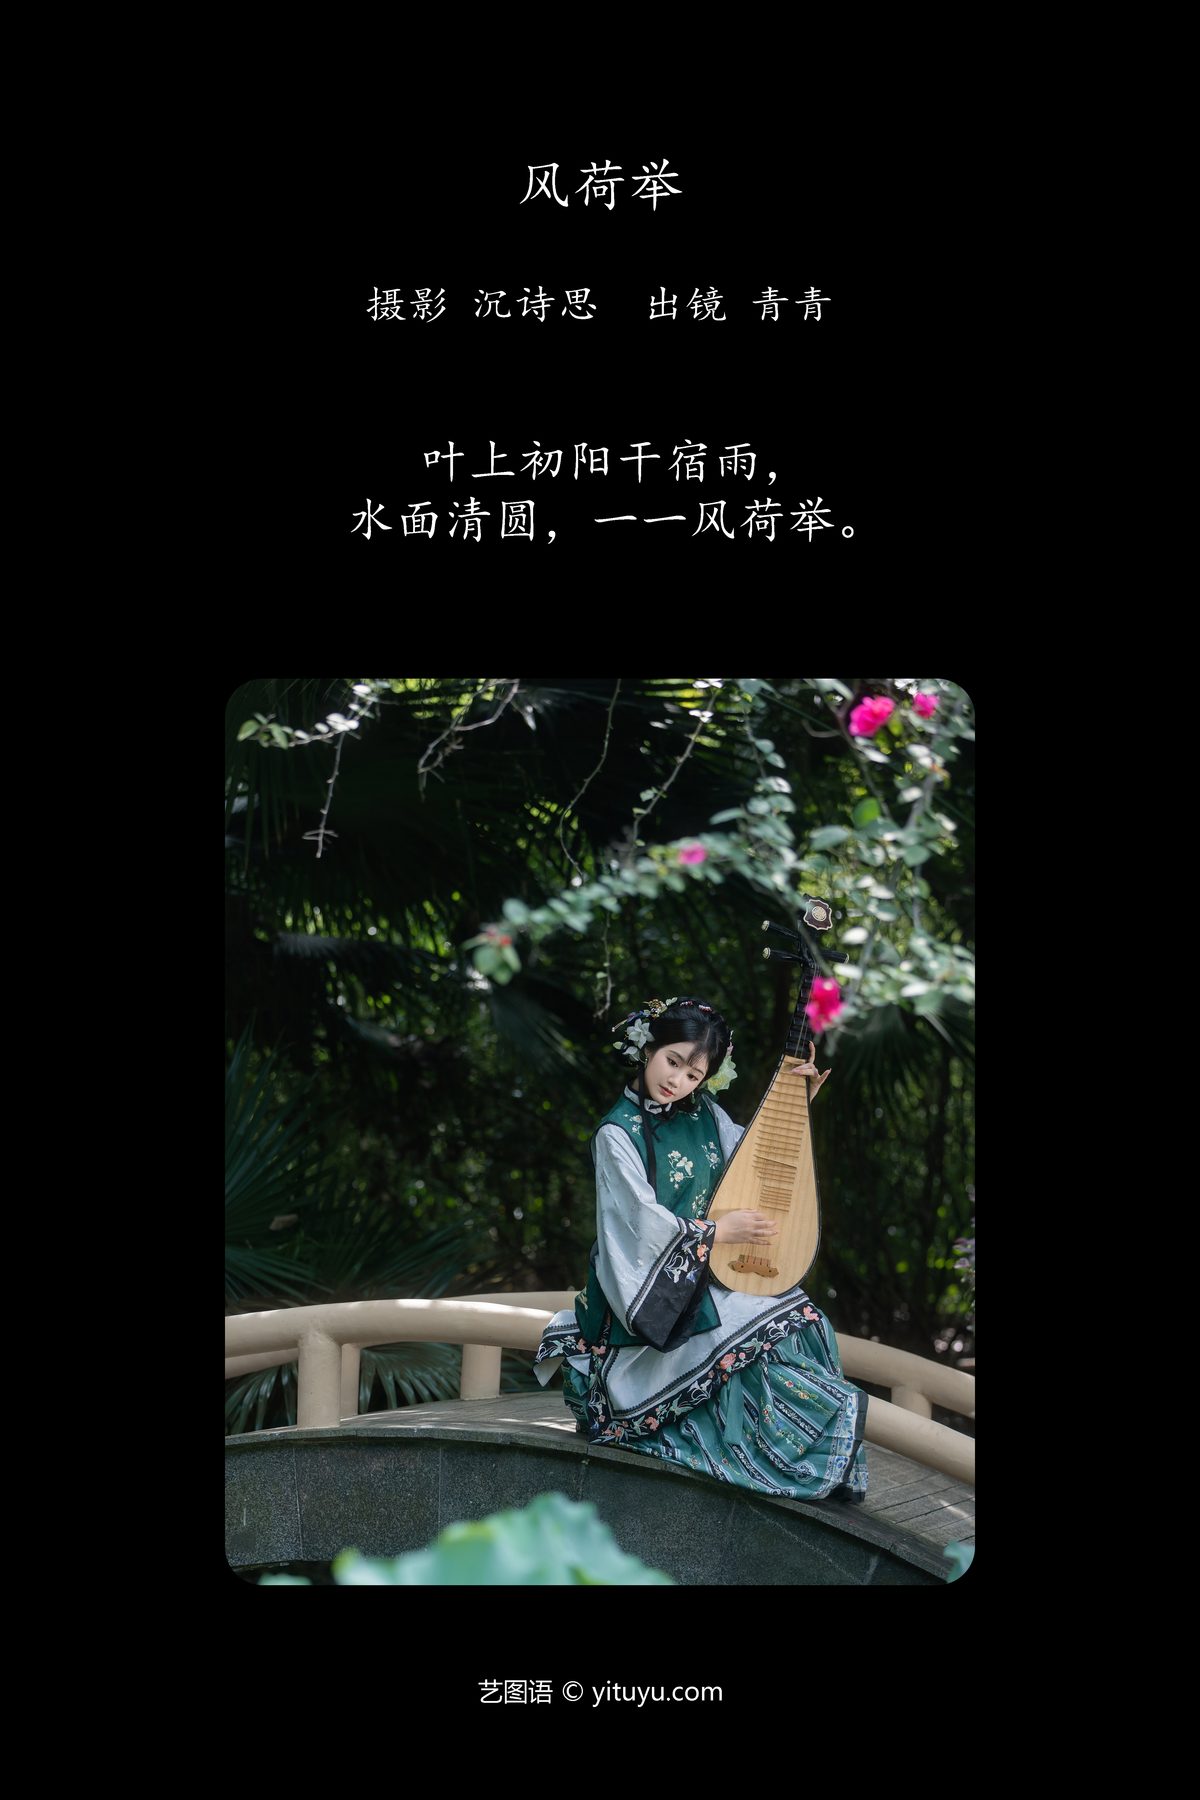 YiTuYu艺图语 Vol 5716 Qing Qing 0002 6861452410.jpg